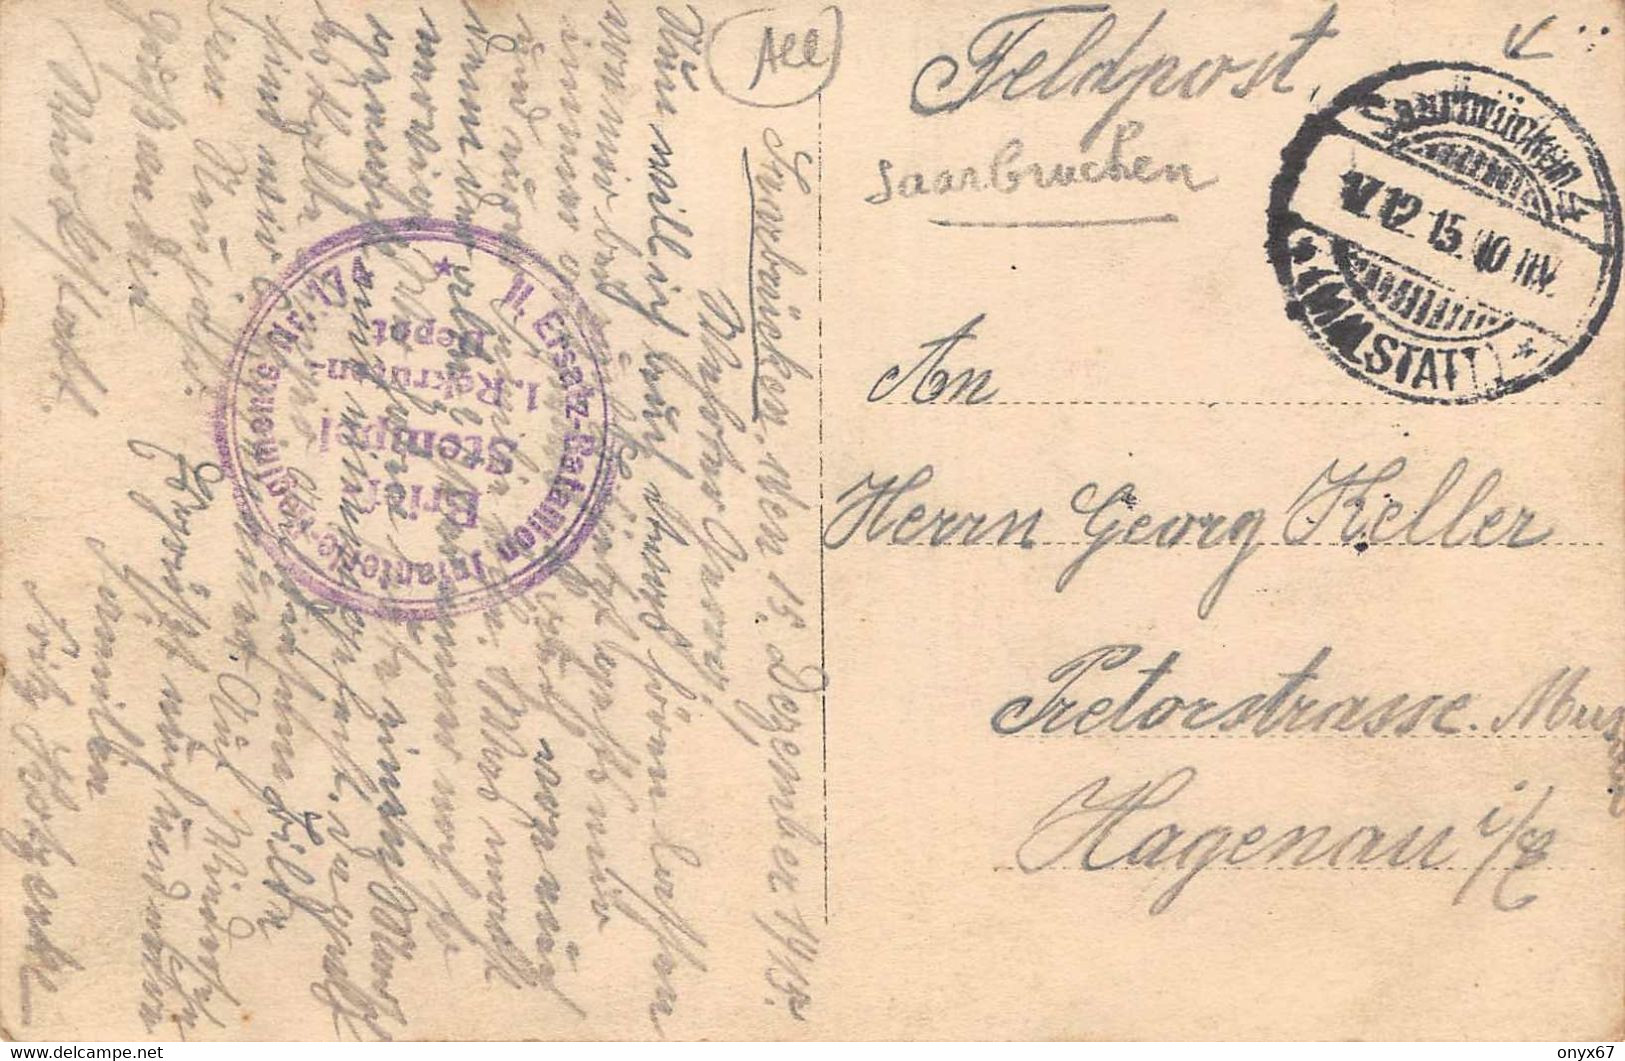 Carte Postale Photo Militaire Allemand SAARBRUCKEN-Saar-Allemagne-Soldaten Infanterie Regiment 174-Krieg-Stempel - Saarbruecken